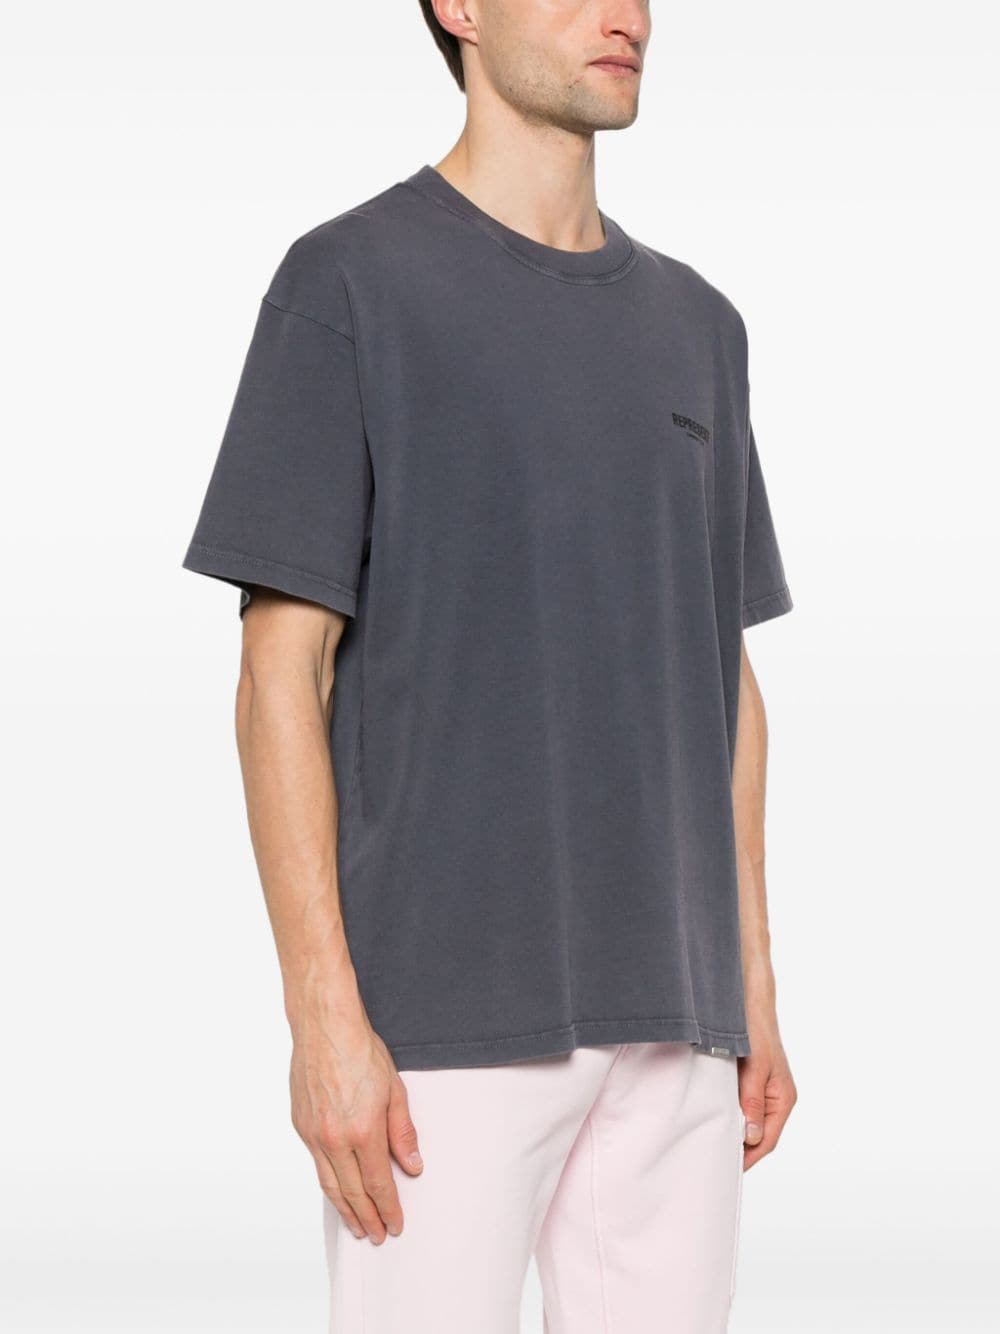 Dark gray oversized t-shirt